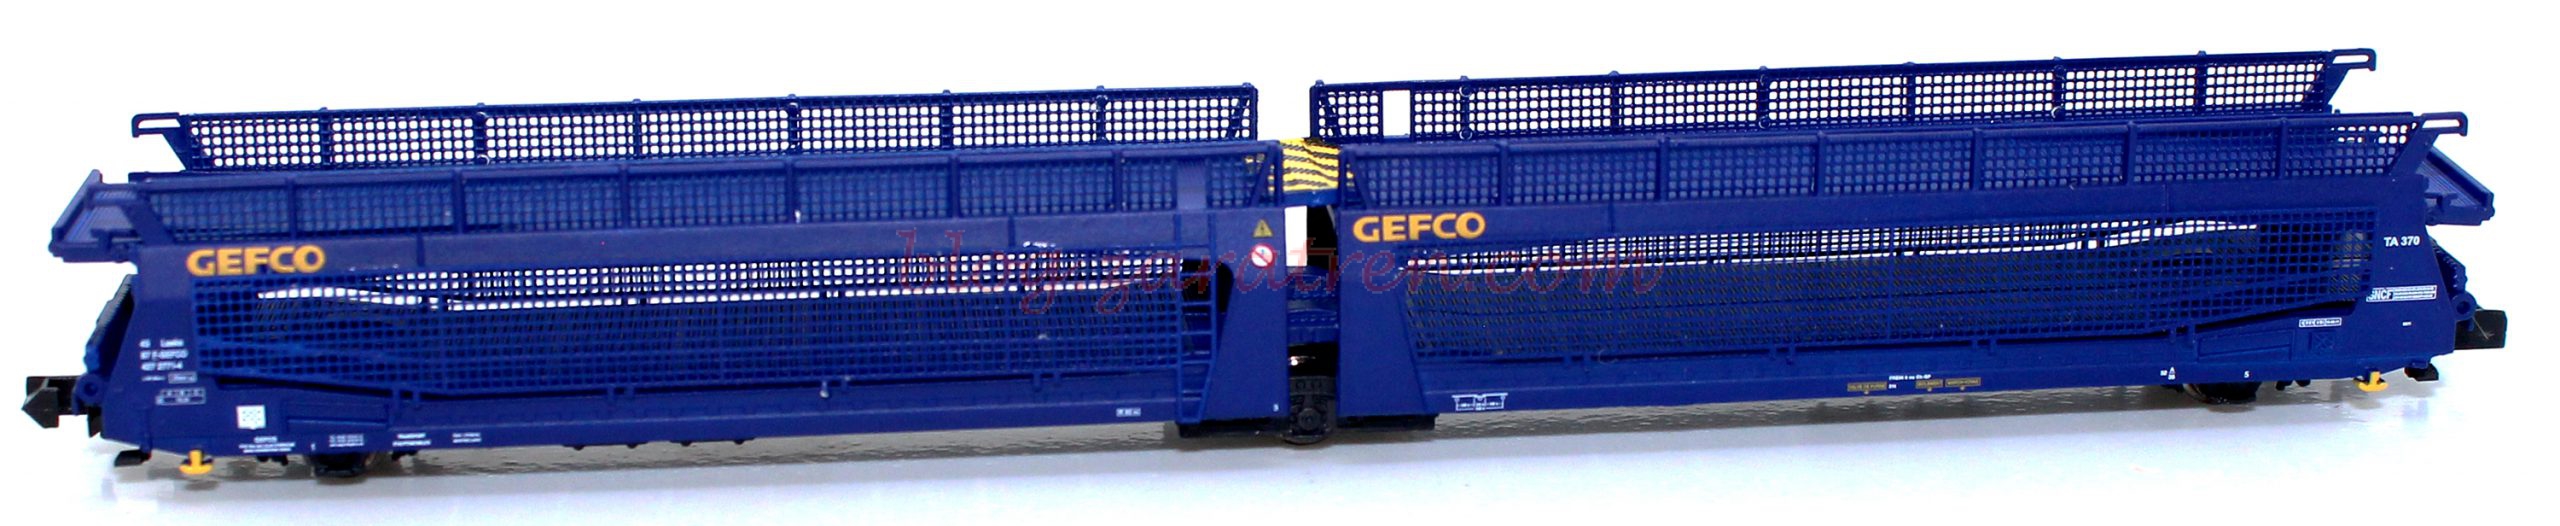 Mftrain – Vagón portacoches TA370 Gefco con rejillas, SNCF, Epoca VI, Escala N, Ref: N33264.